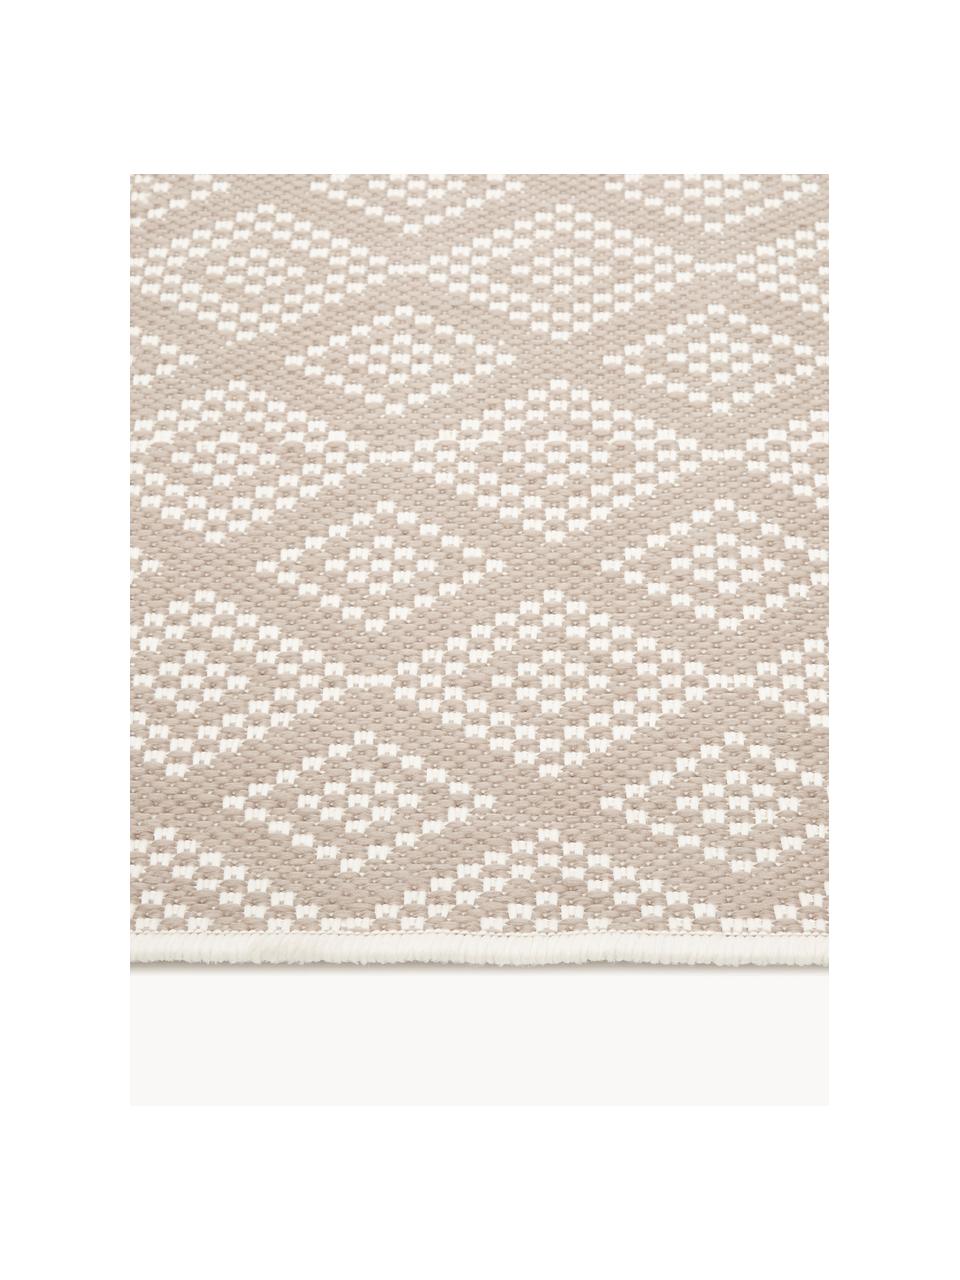 Interiérový a exteriérový koberec Capri, 86 % polypropylen, 14 % polyester, Béžová, krémově bílá, Š 80 cm, D 150 cm (velikost XS)